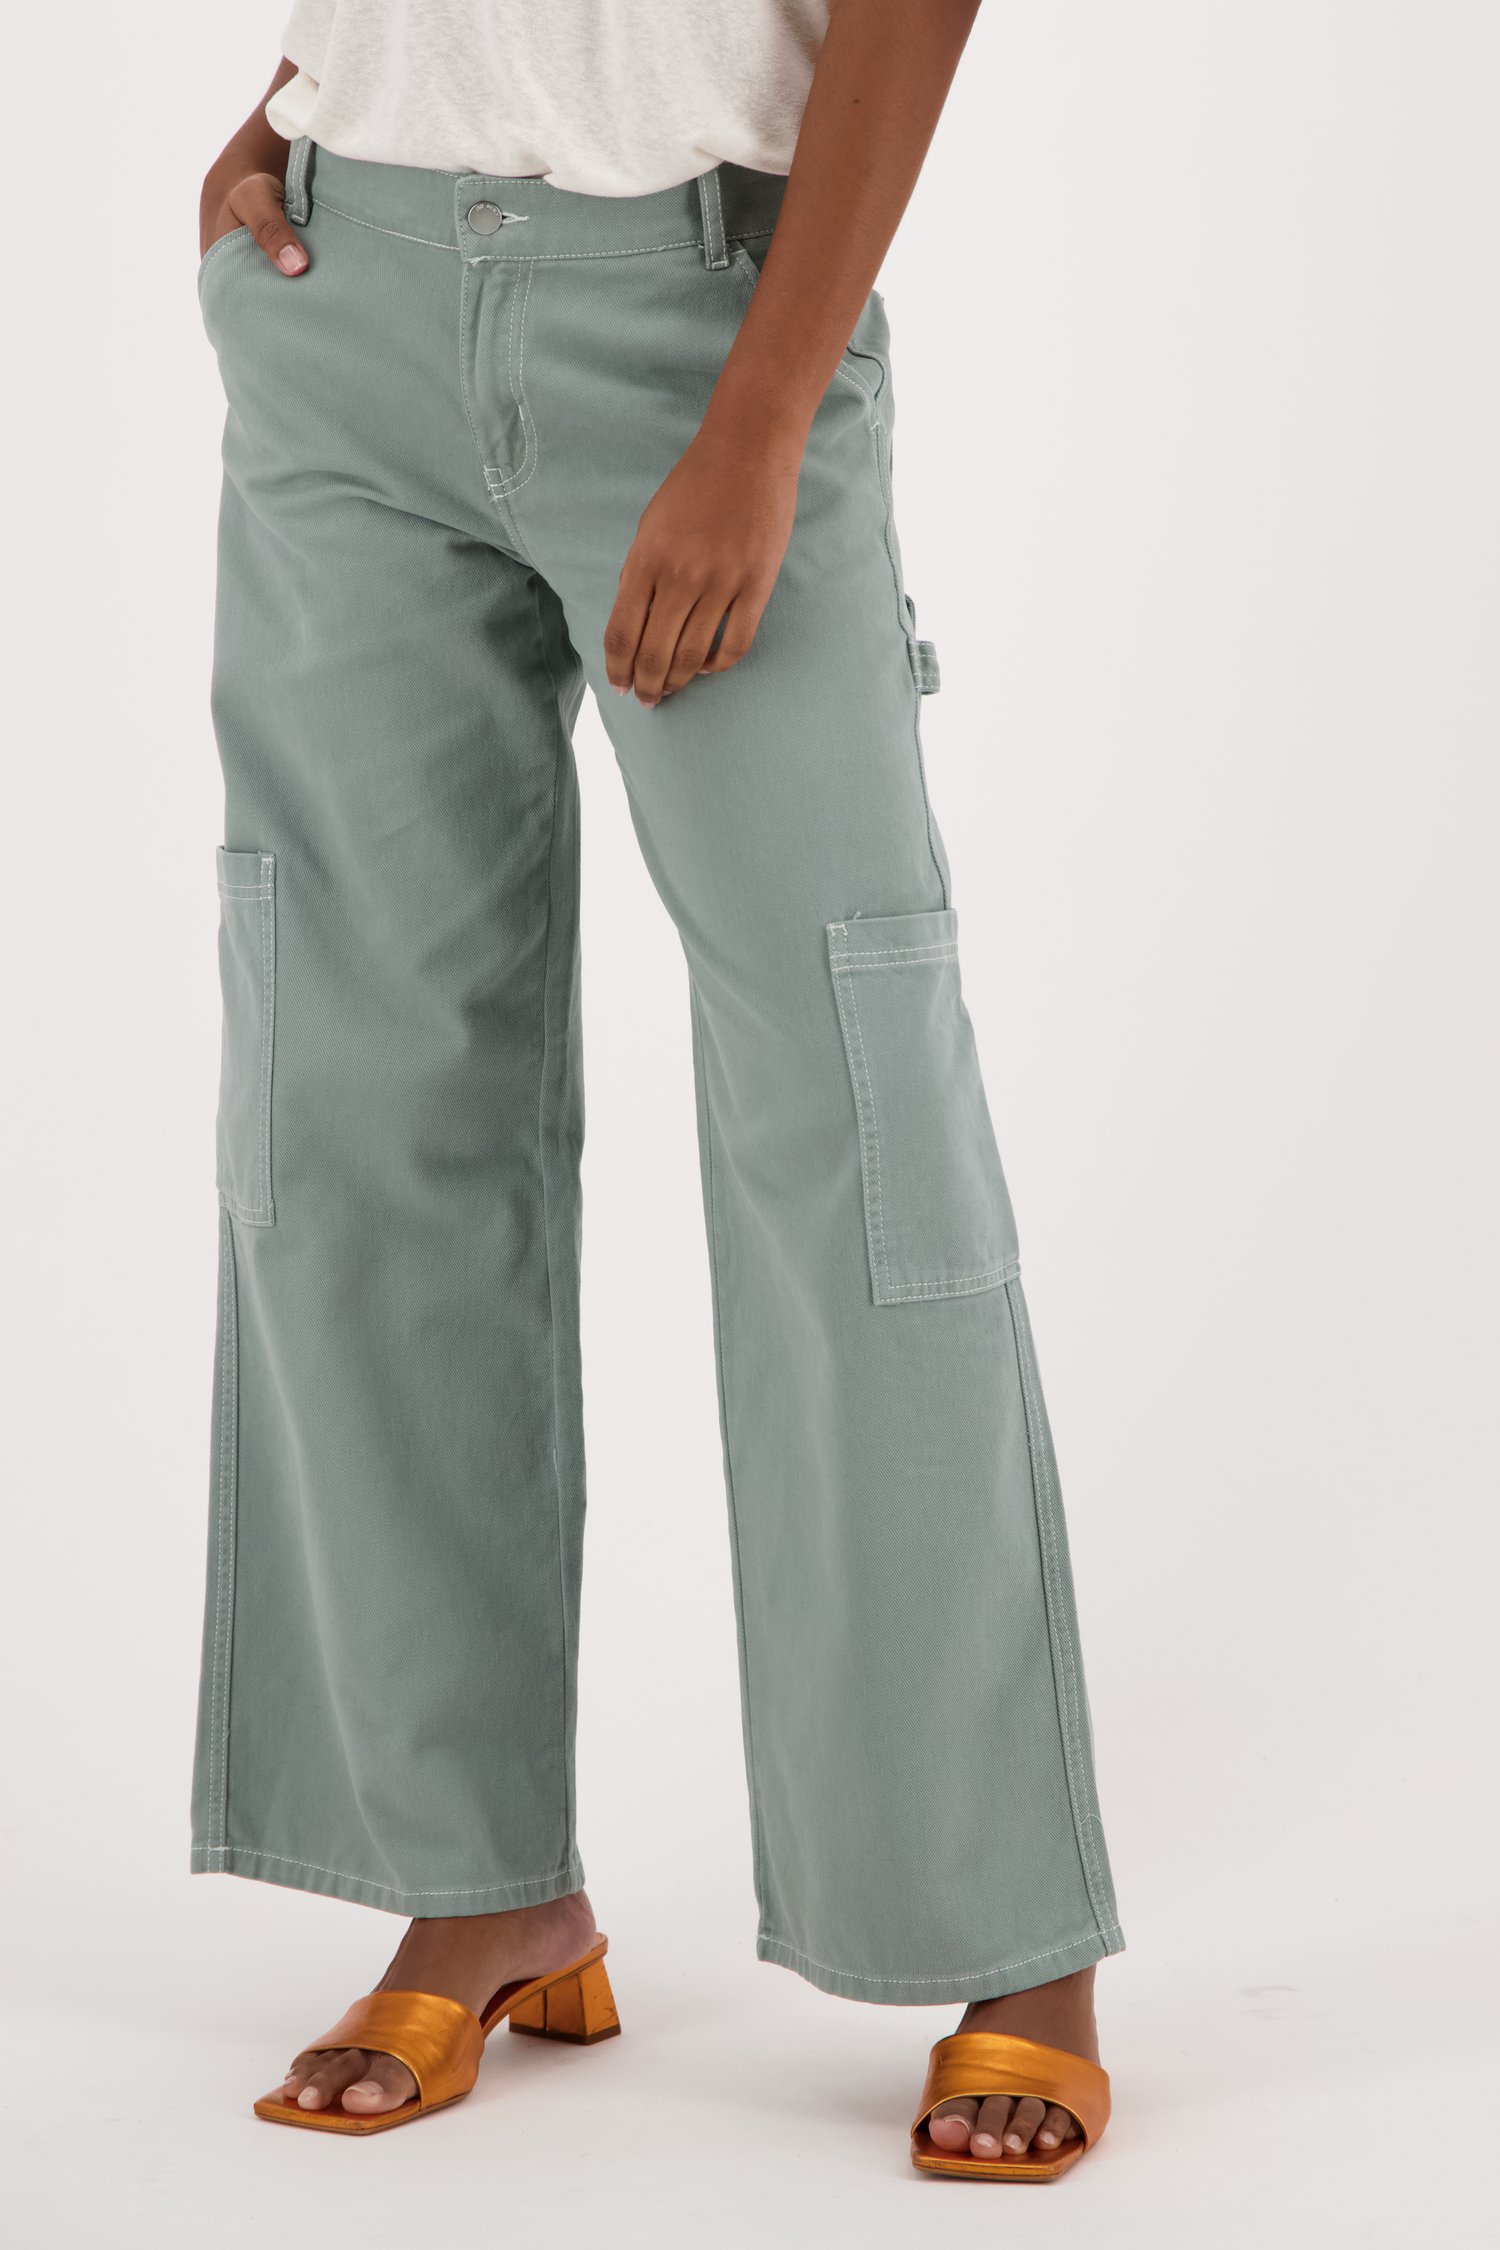 Pantalon cargo large vert clair de JDY pour Femmes